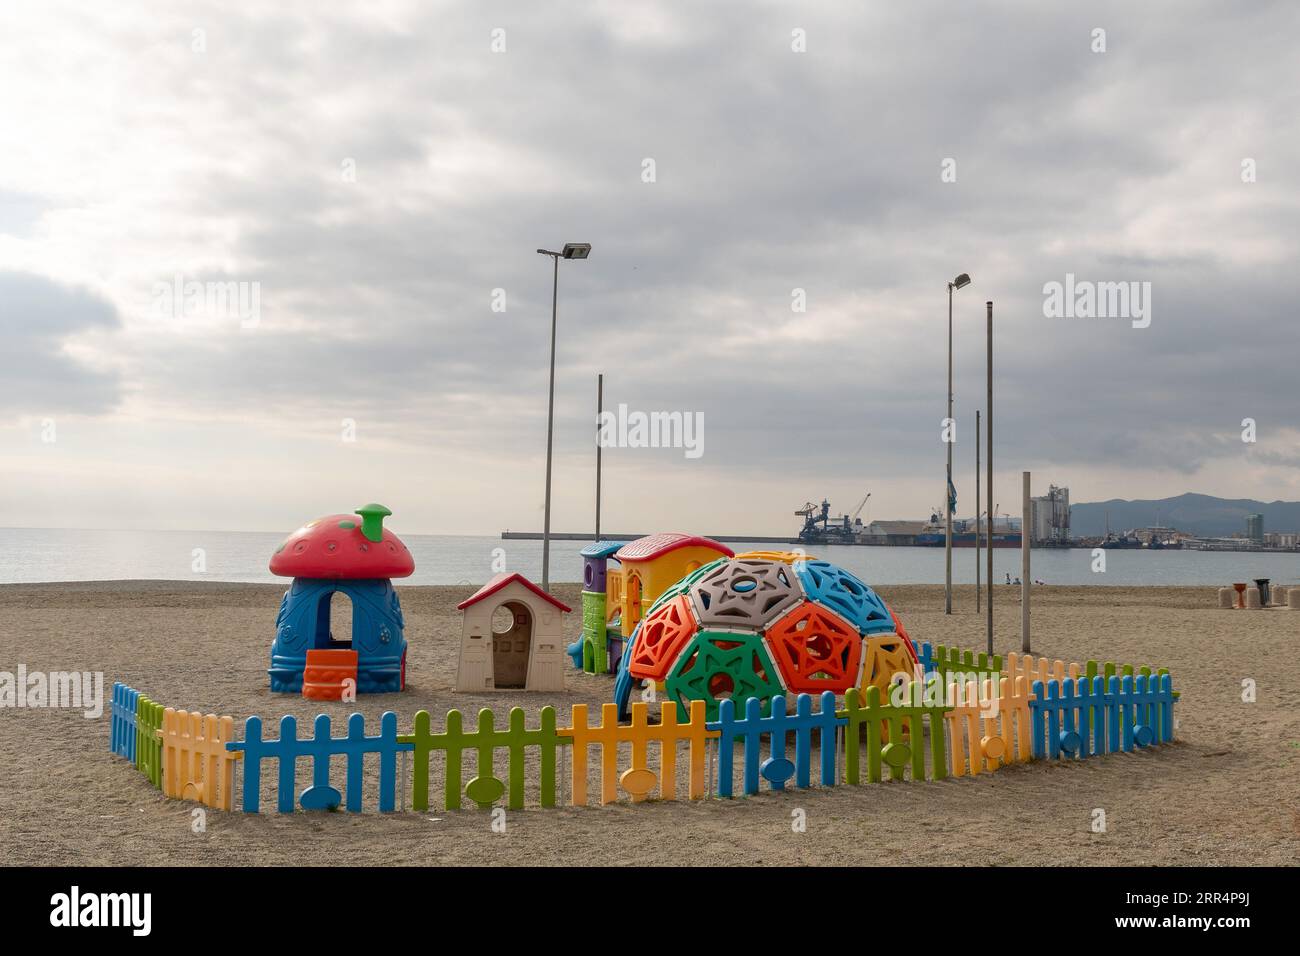 Parco giochi sulla spiaggia vuota d'inverno con il porto di Savona sullo sfondo in una giornata nuvolosa, Albissola Marina, Savona, Liguria, Italia Foto Stock